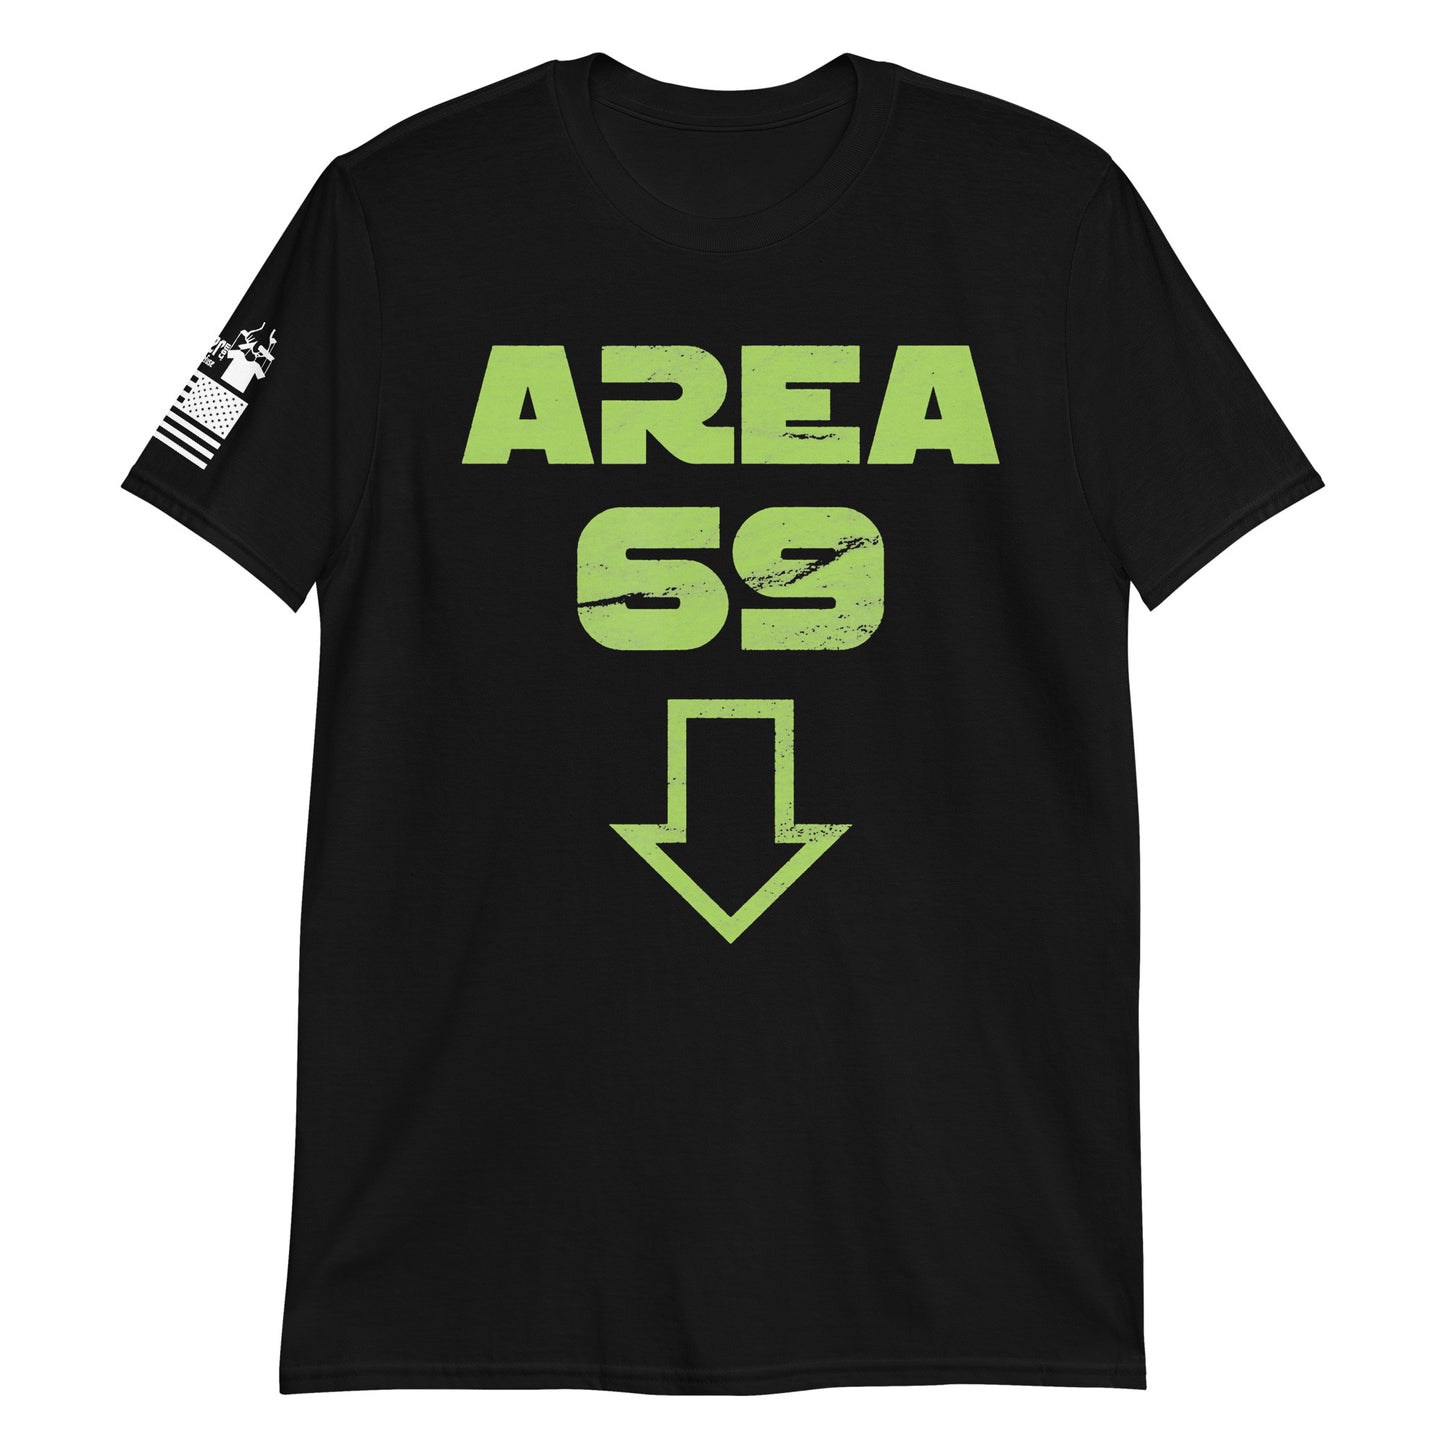 Area 69 - Basic T-Shirt (unisex) | TheShirtfather